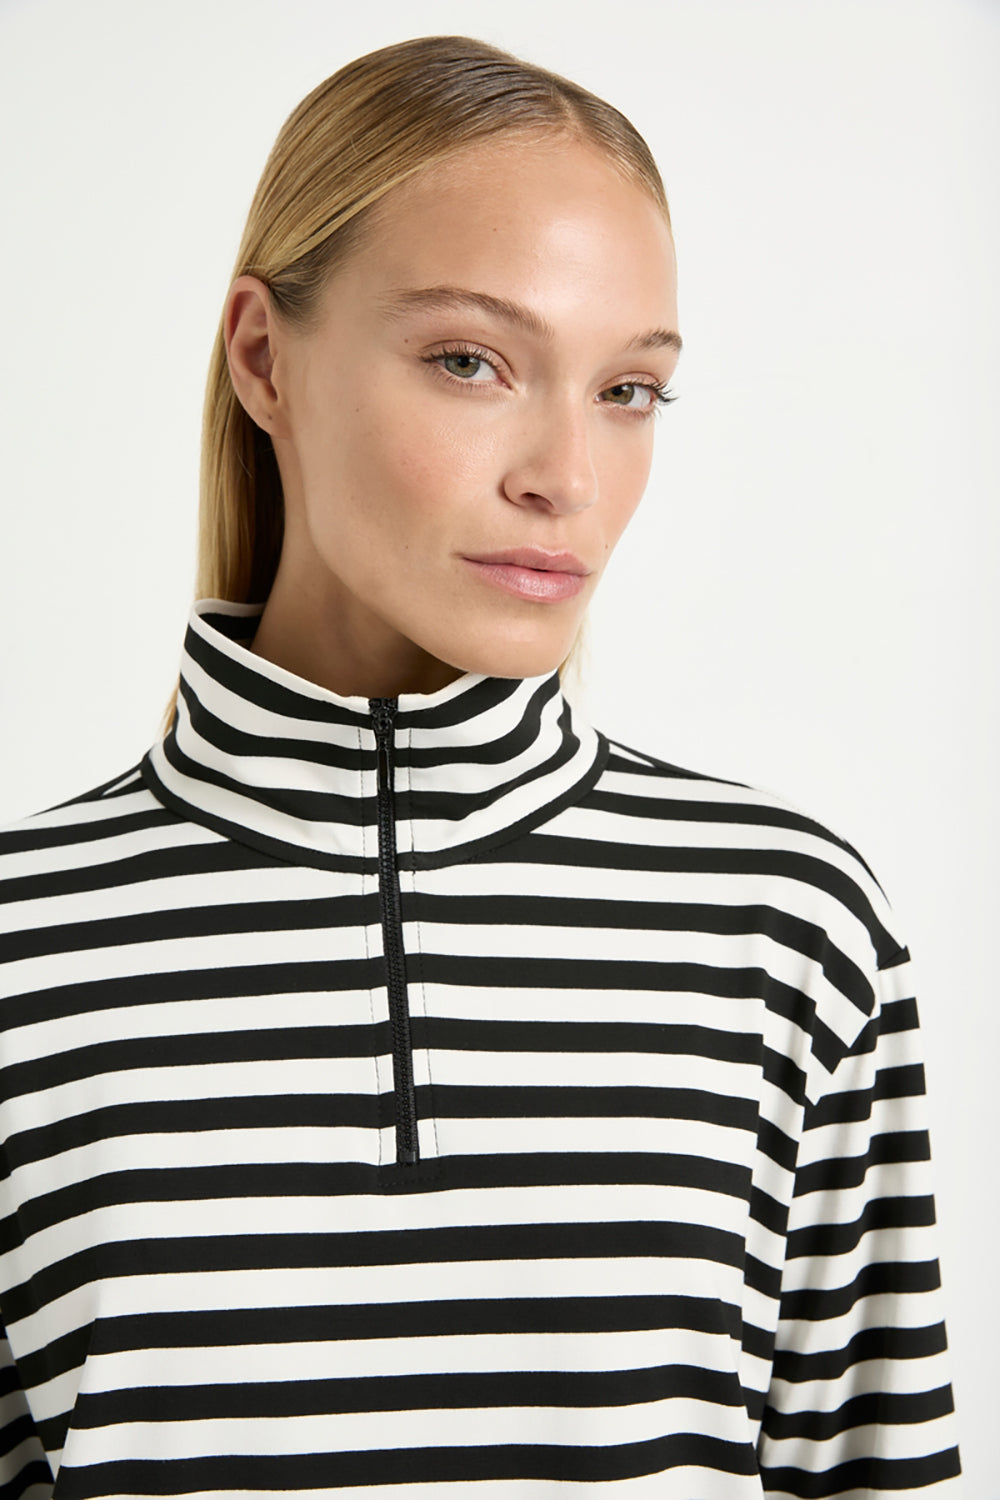 Mela Purdie Half Zip Sweater in Beval Stripe Milk/Black F530 8259